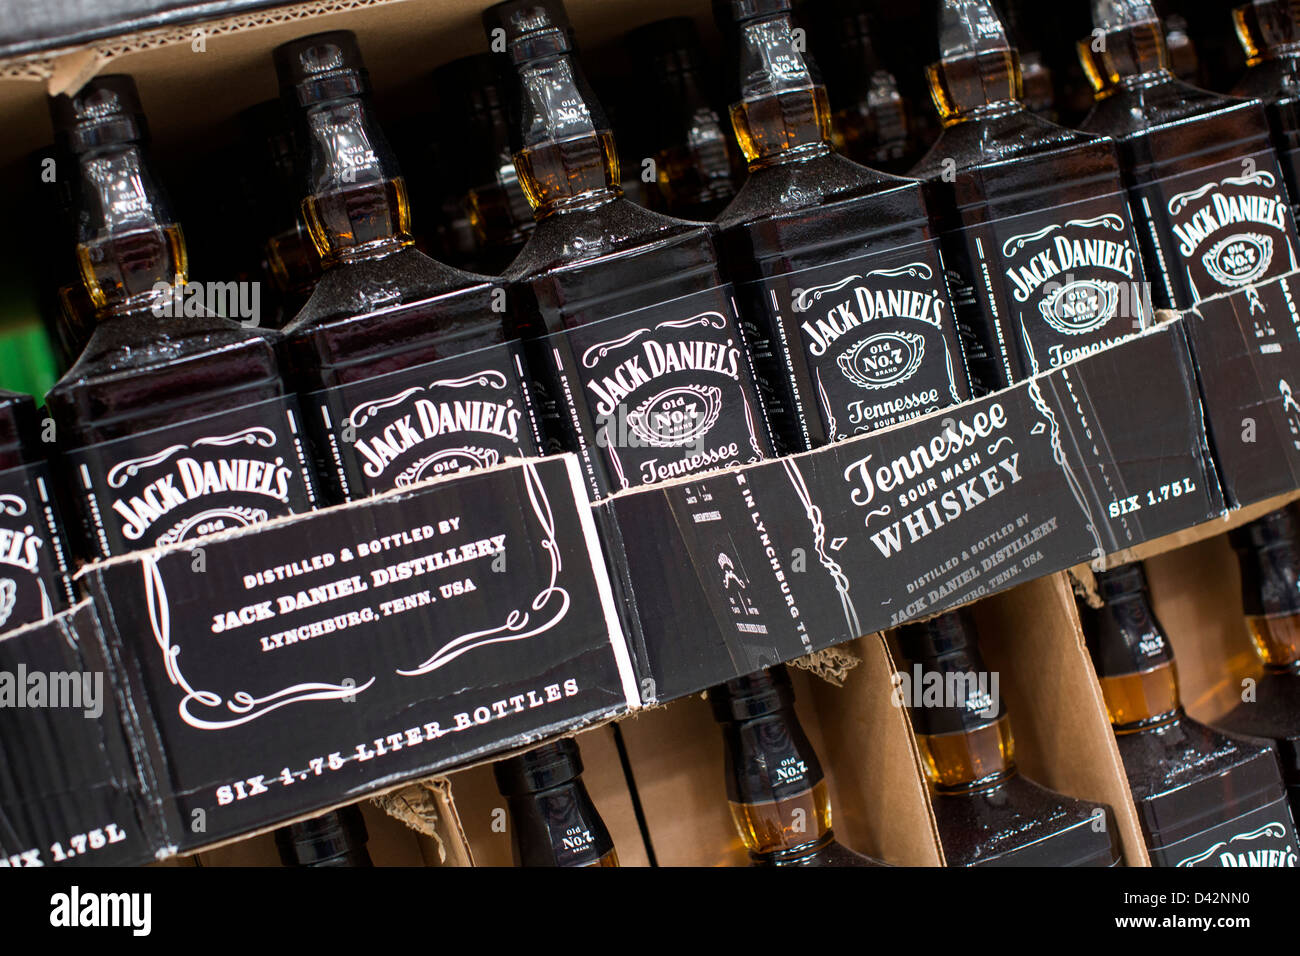 Jack Daniels Whiskey Bottle Stockfotos und -bilder Kaufen - Alamy